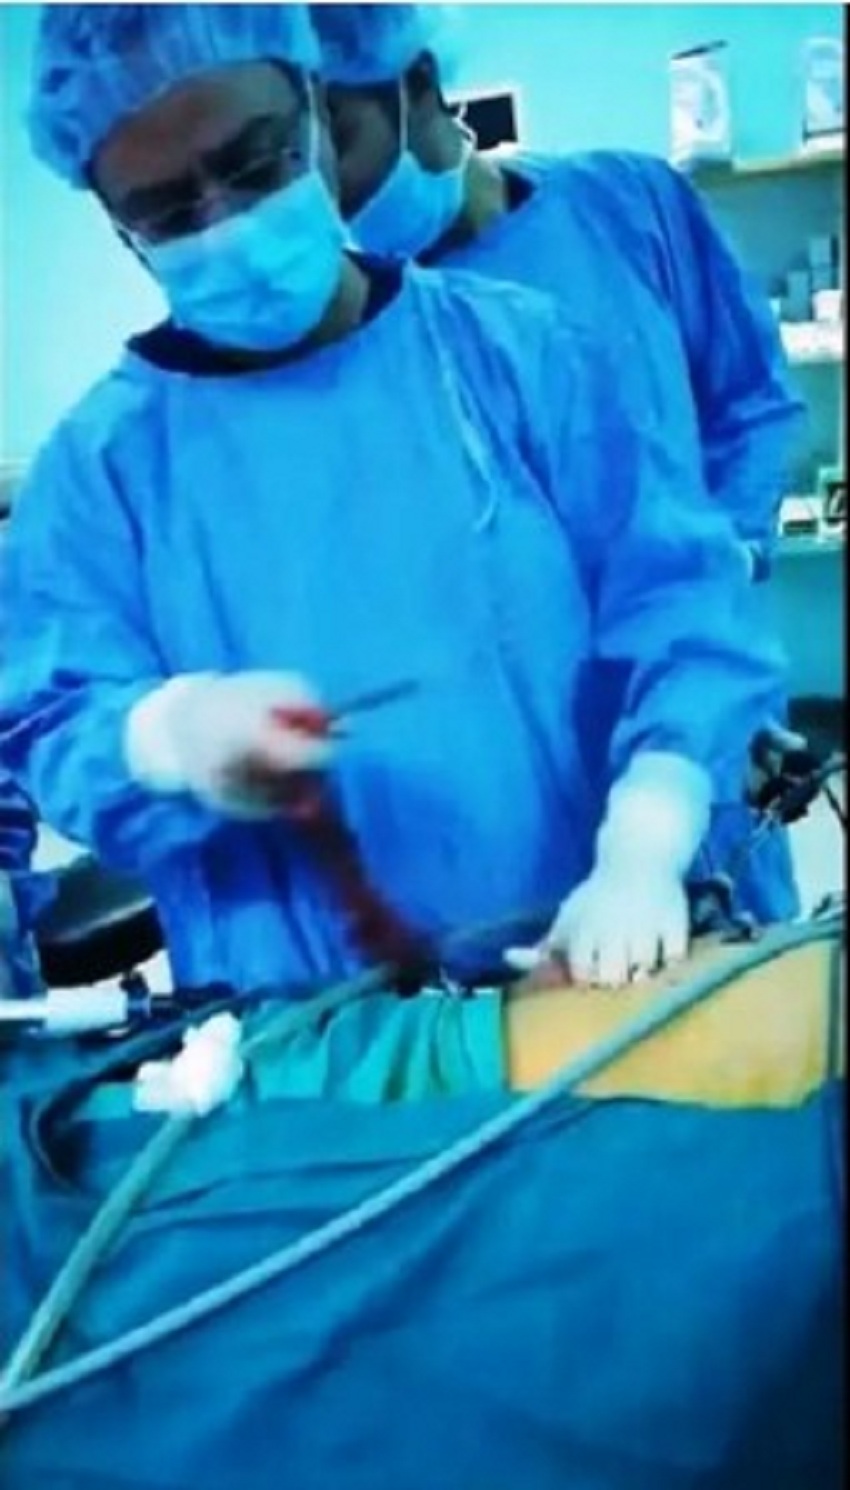 عملية جراحية نوعية  ..  استئصال ورم يزن (3) كيلوغرام من امعاء اربعيني بمستشفى الأميرة بسمة